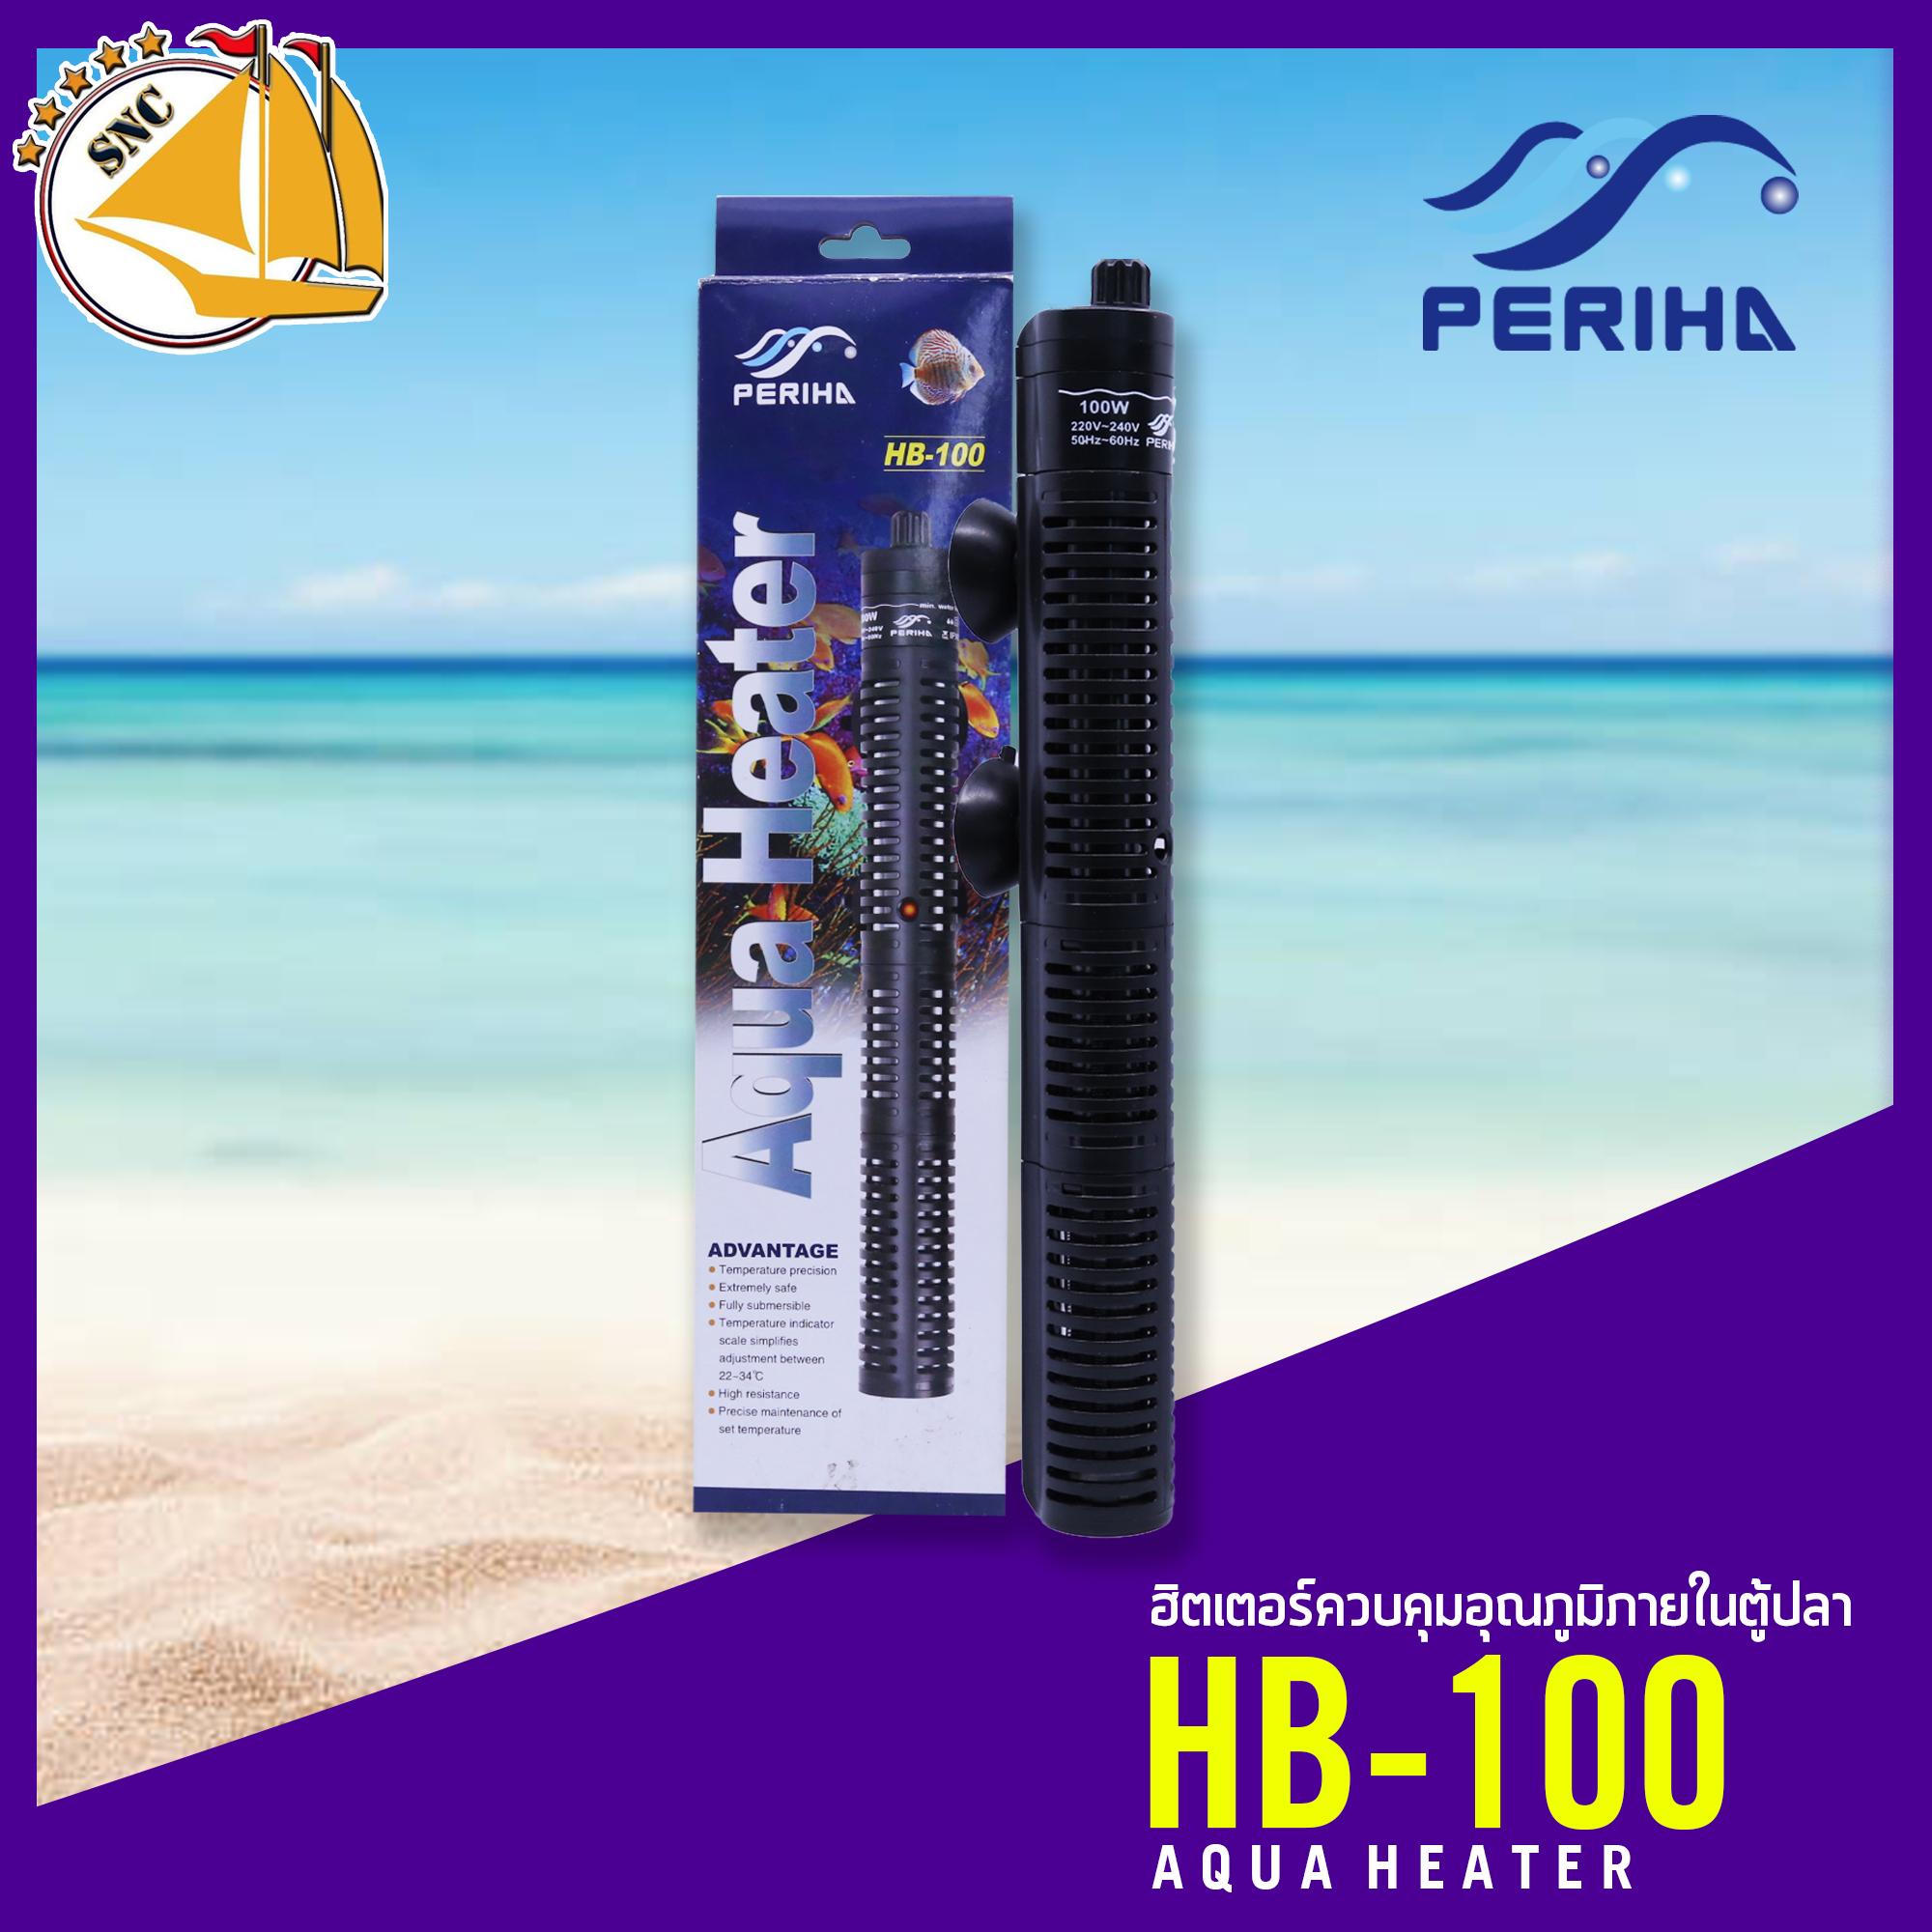 เครื่องควบคุมอุณหภูมิน้ำ Periha Aqua Heater HB-100 ฮีตเตอร์ตู้ปลา